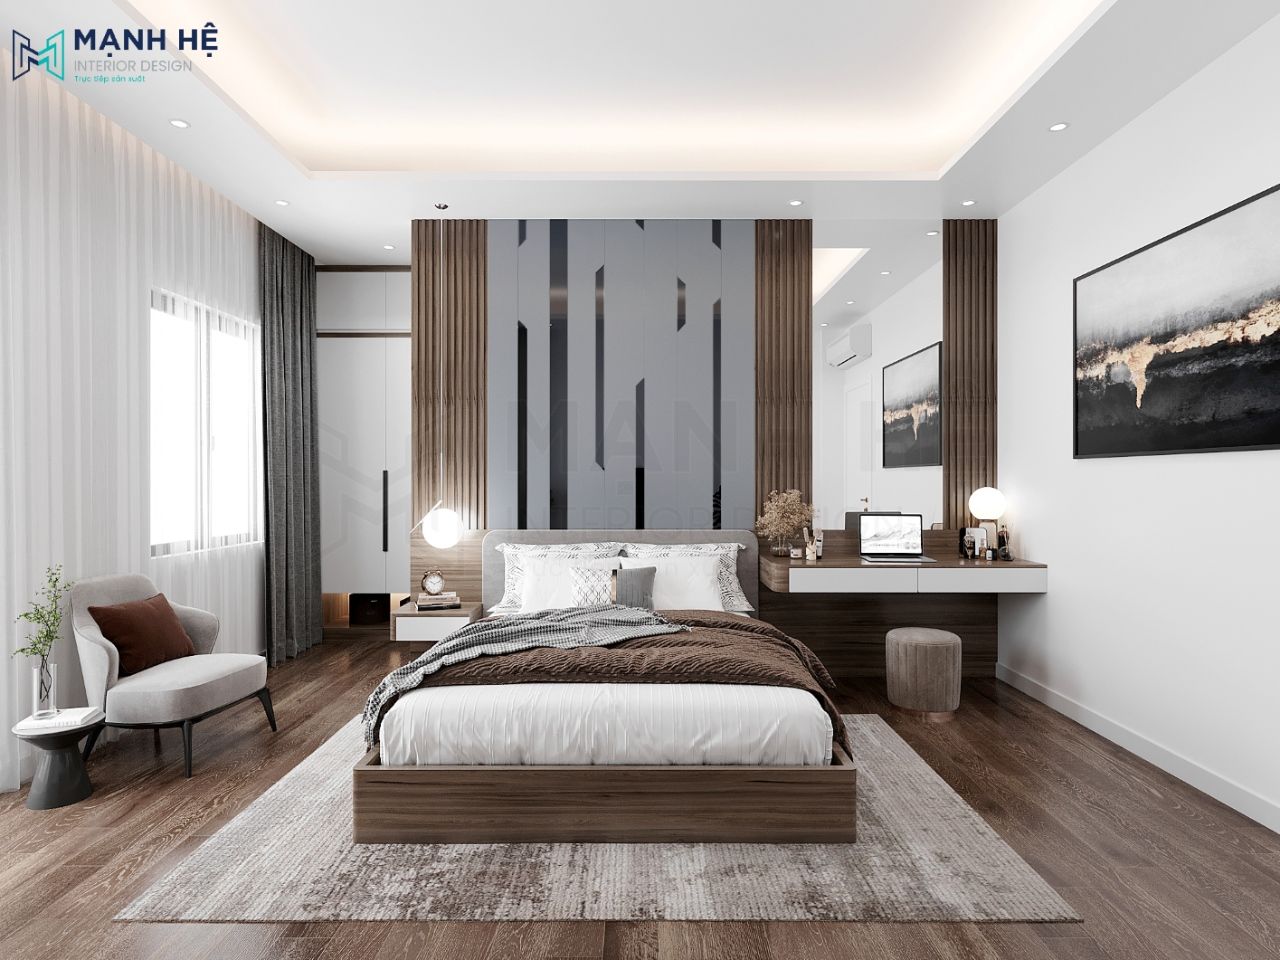 Vách đầu giường được ốp PVC cách điệu hiện đại kết hợp với các thanh lam gỗ 2 bên tạo tăng sự hài hòa